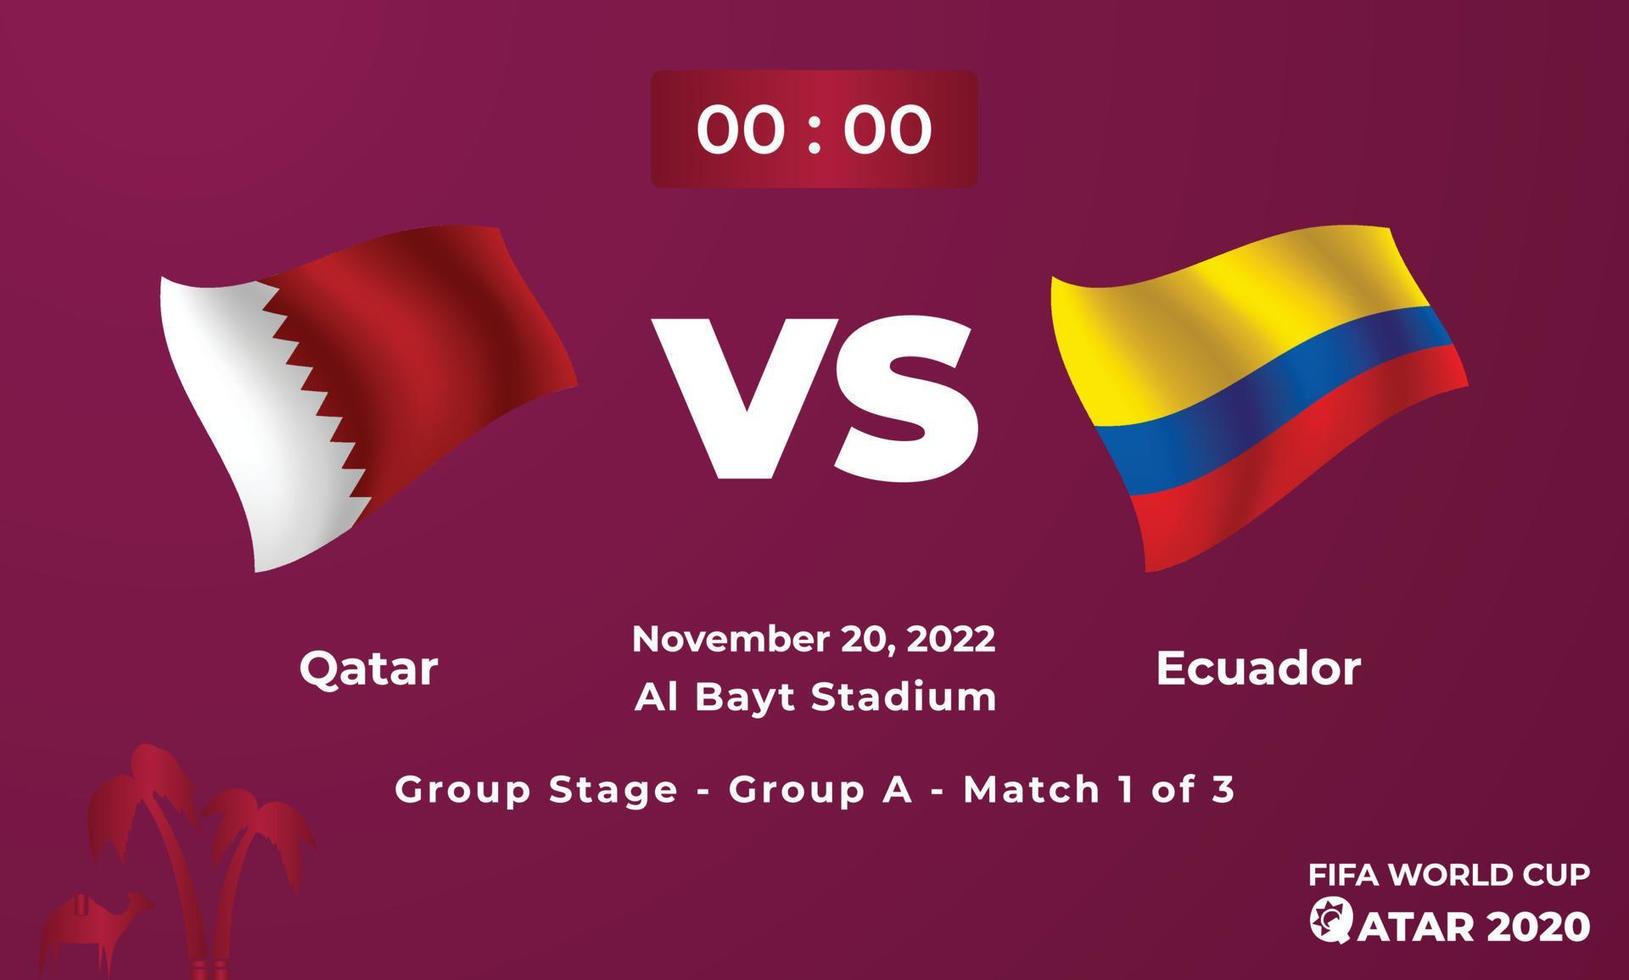 qatar mot ecuador fotboll matchmall, fifa värld kopp i qatar 2022 vektor